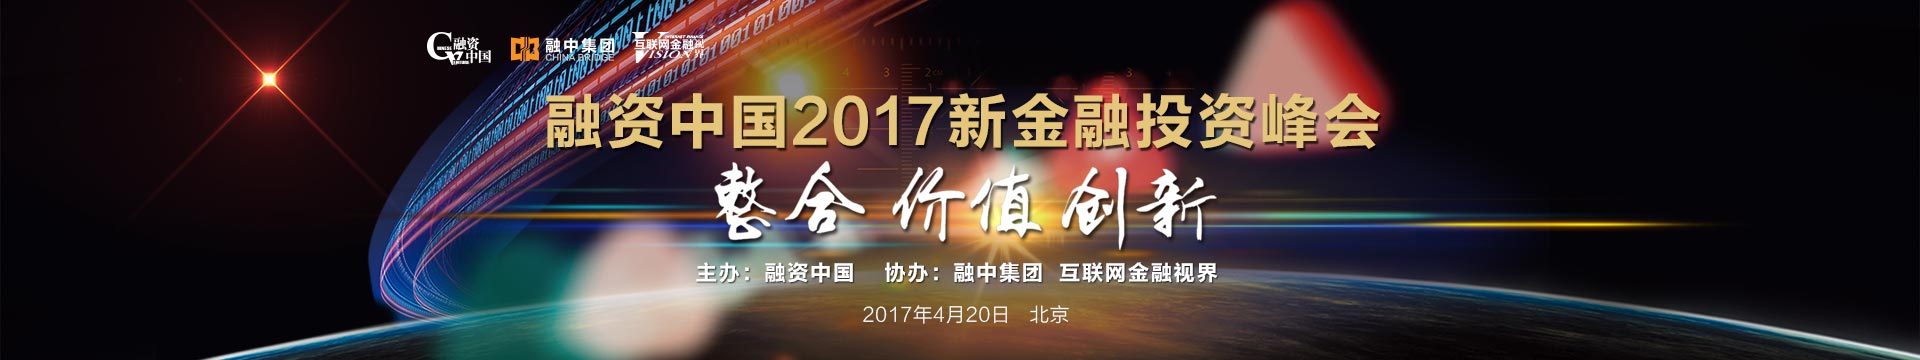 融资中国2017新金融投资峰会